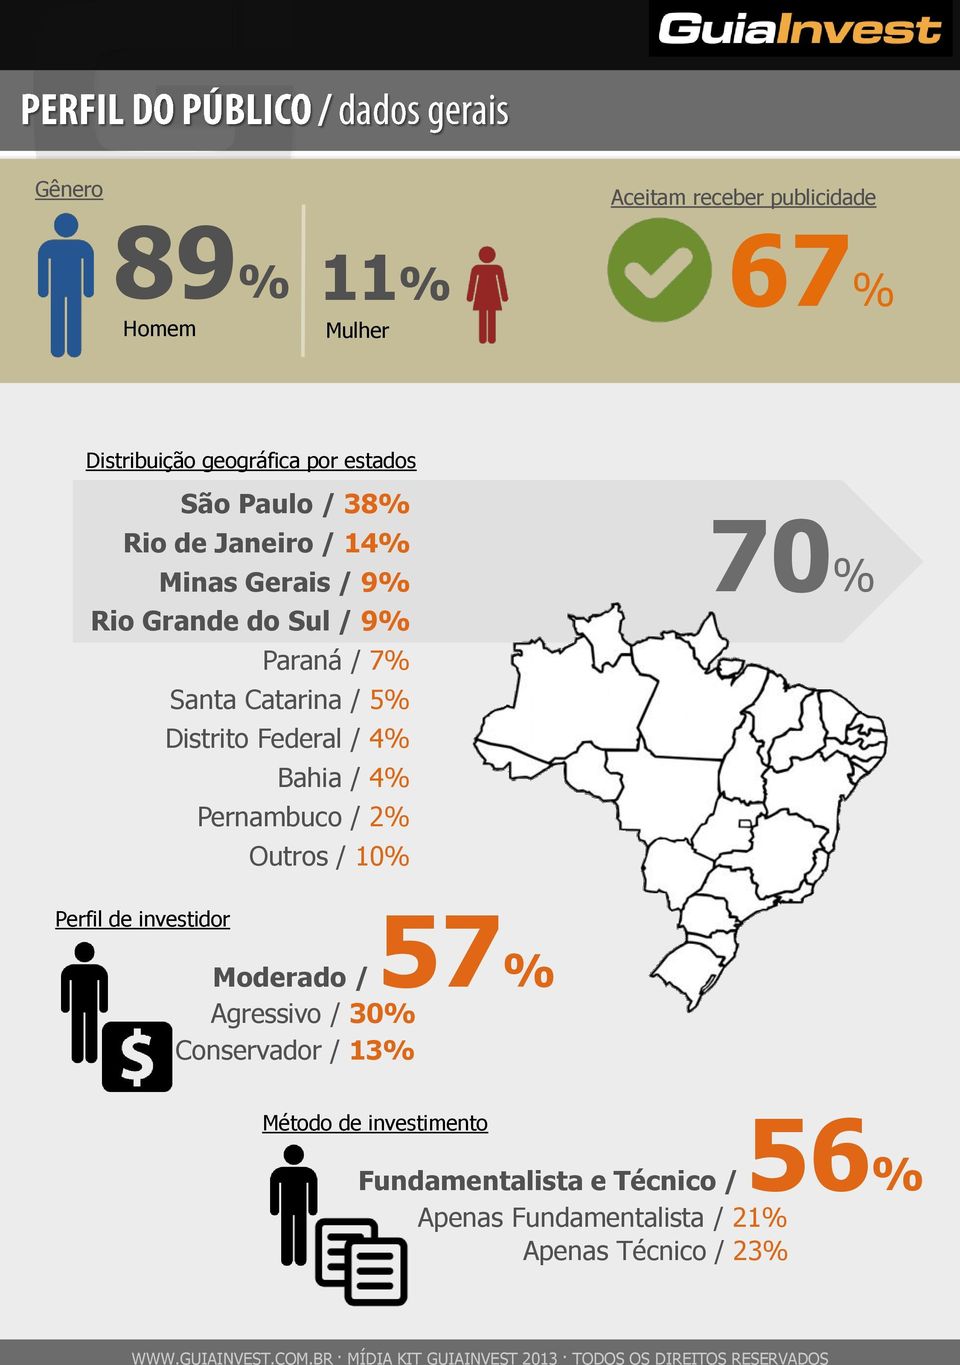 / 4% Bahia / 4% Pernambuco / 2% Outros / 10% 70% Perfil de investidor 57% Moderado / Agressivo / 30%